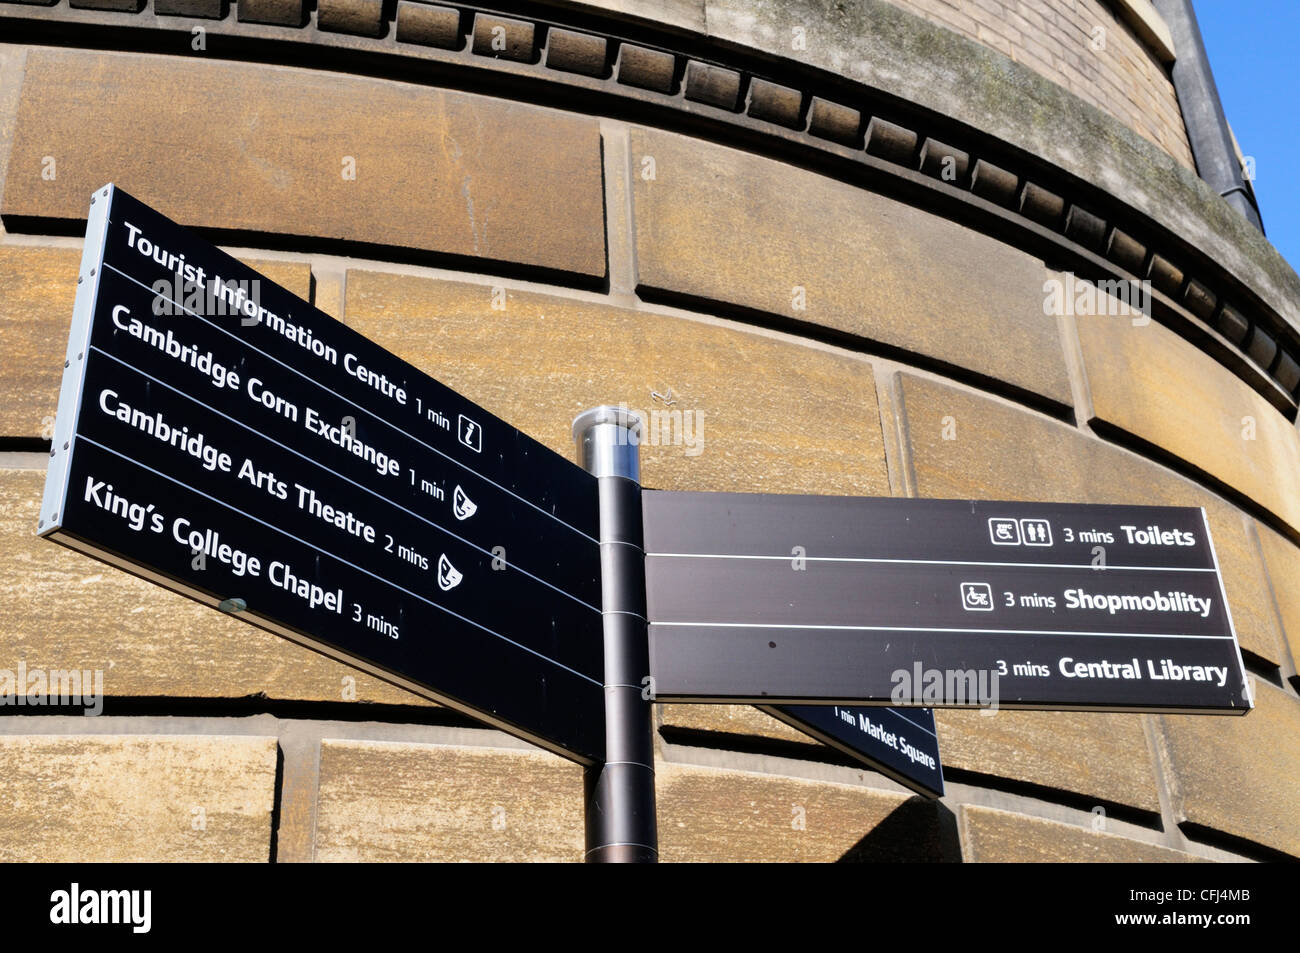 Segnaletica per le attrazioni turistiche e strutture, Cambridge, Inghilterra, Regno Unito Foto Stock